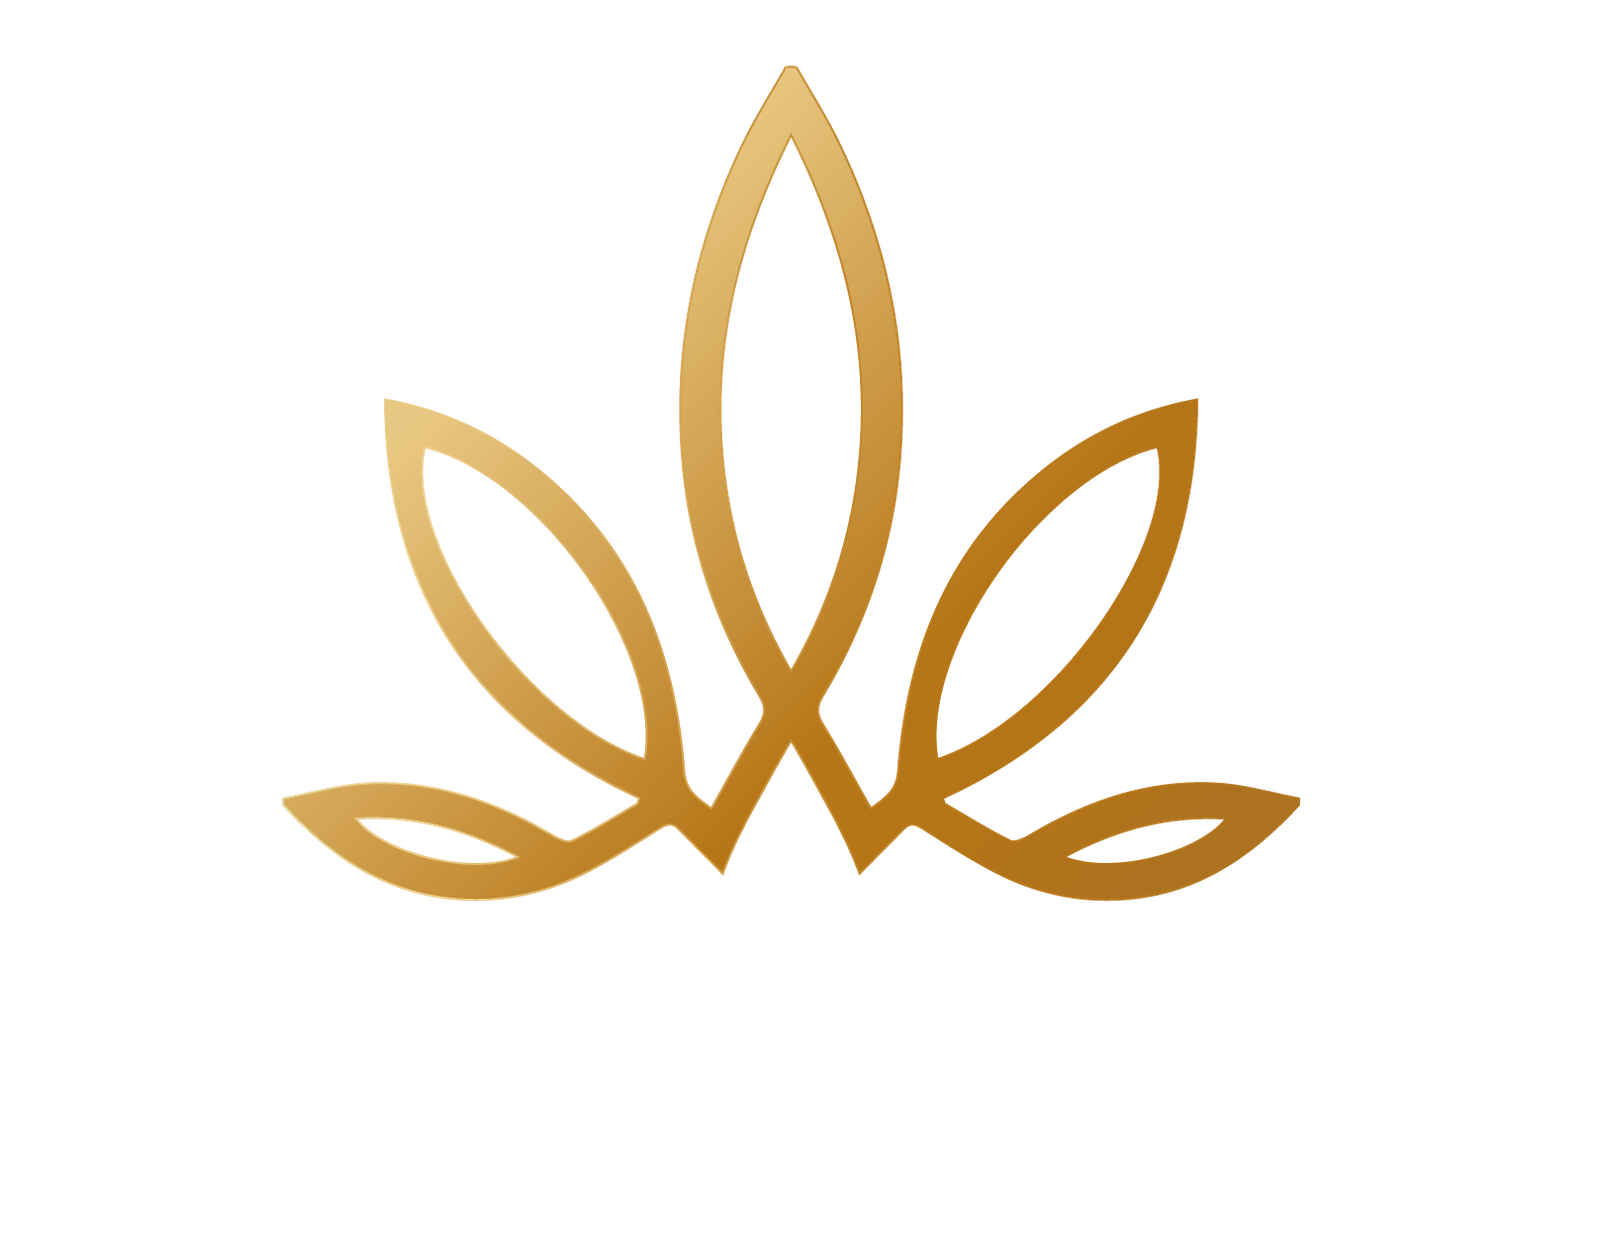 Good Zen